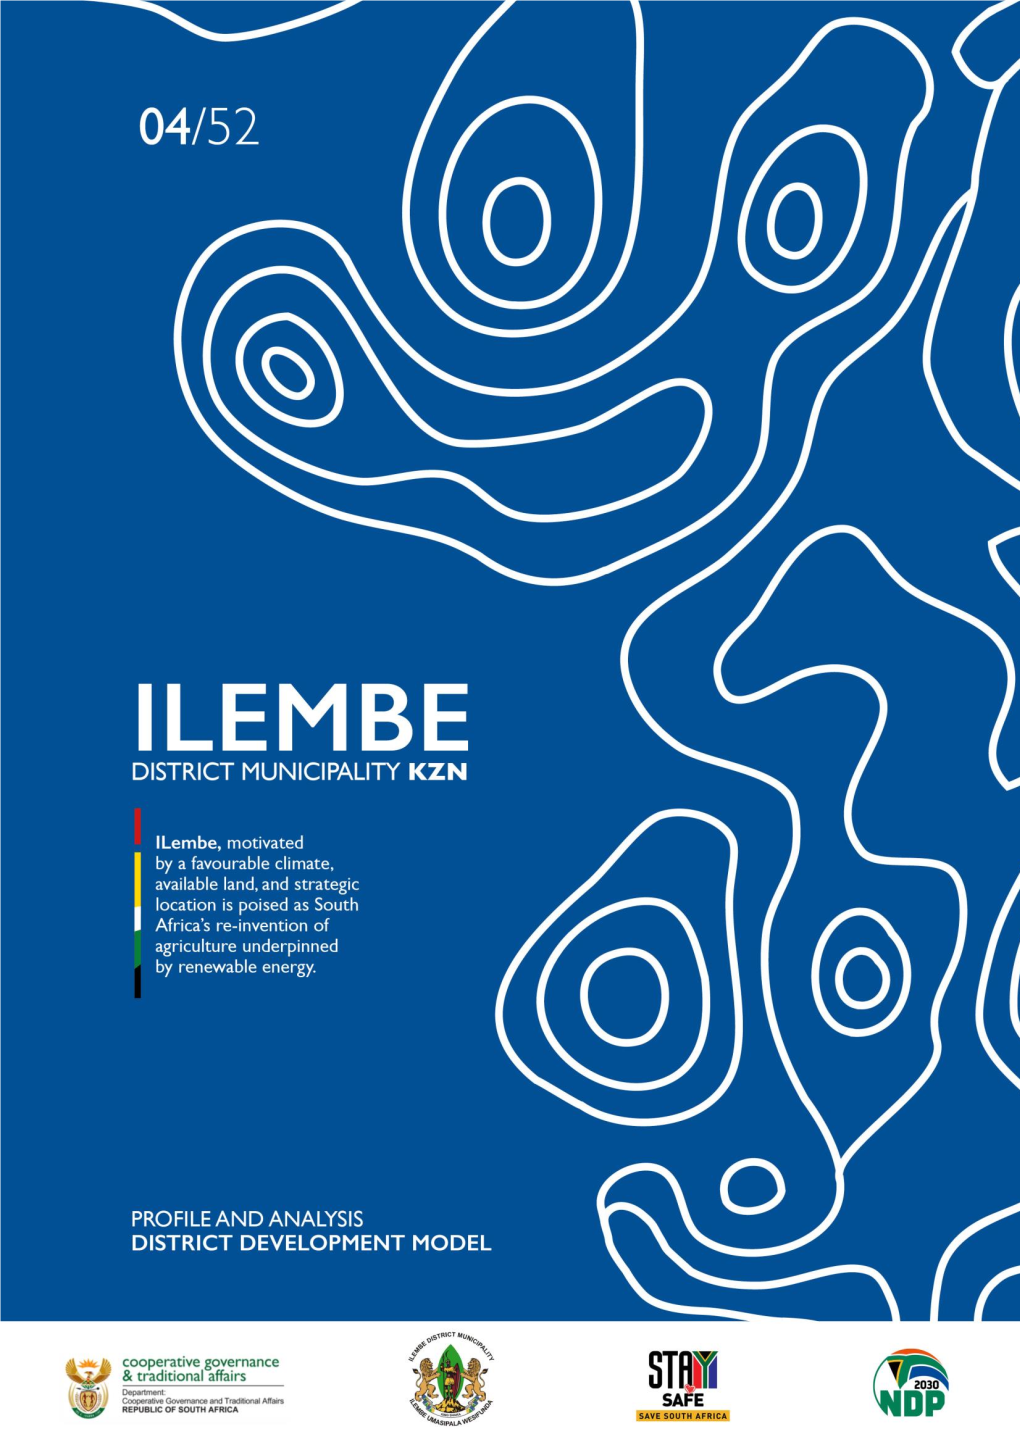 Profile: Ilembe District Municipality